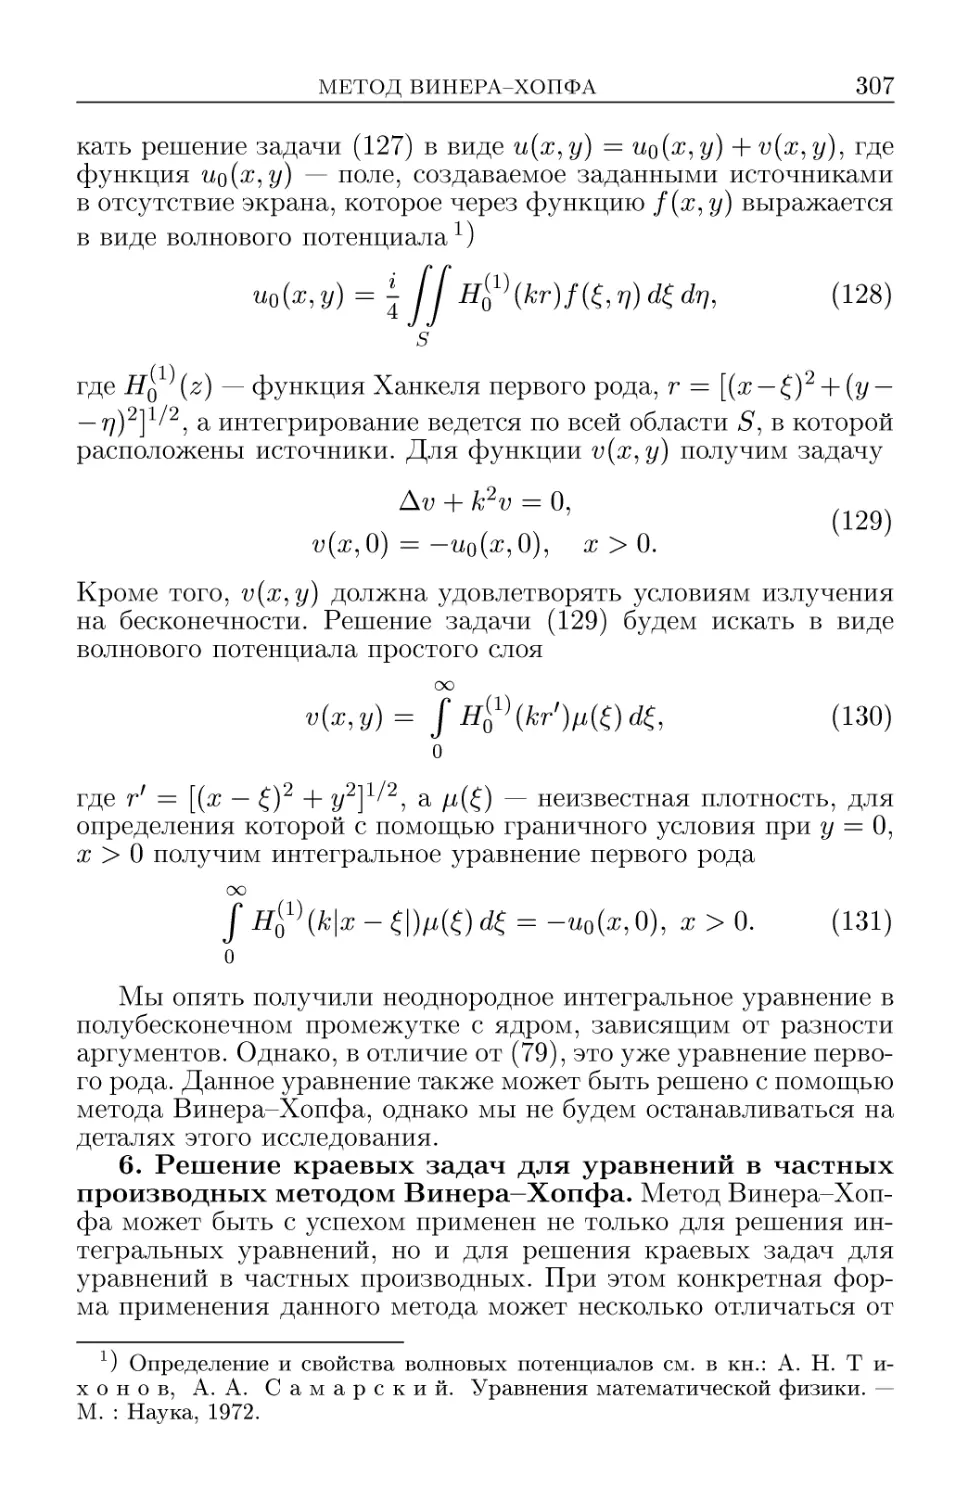 6. Решение краевых задач для уравнения в частных производных методом Винера-Хопфа